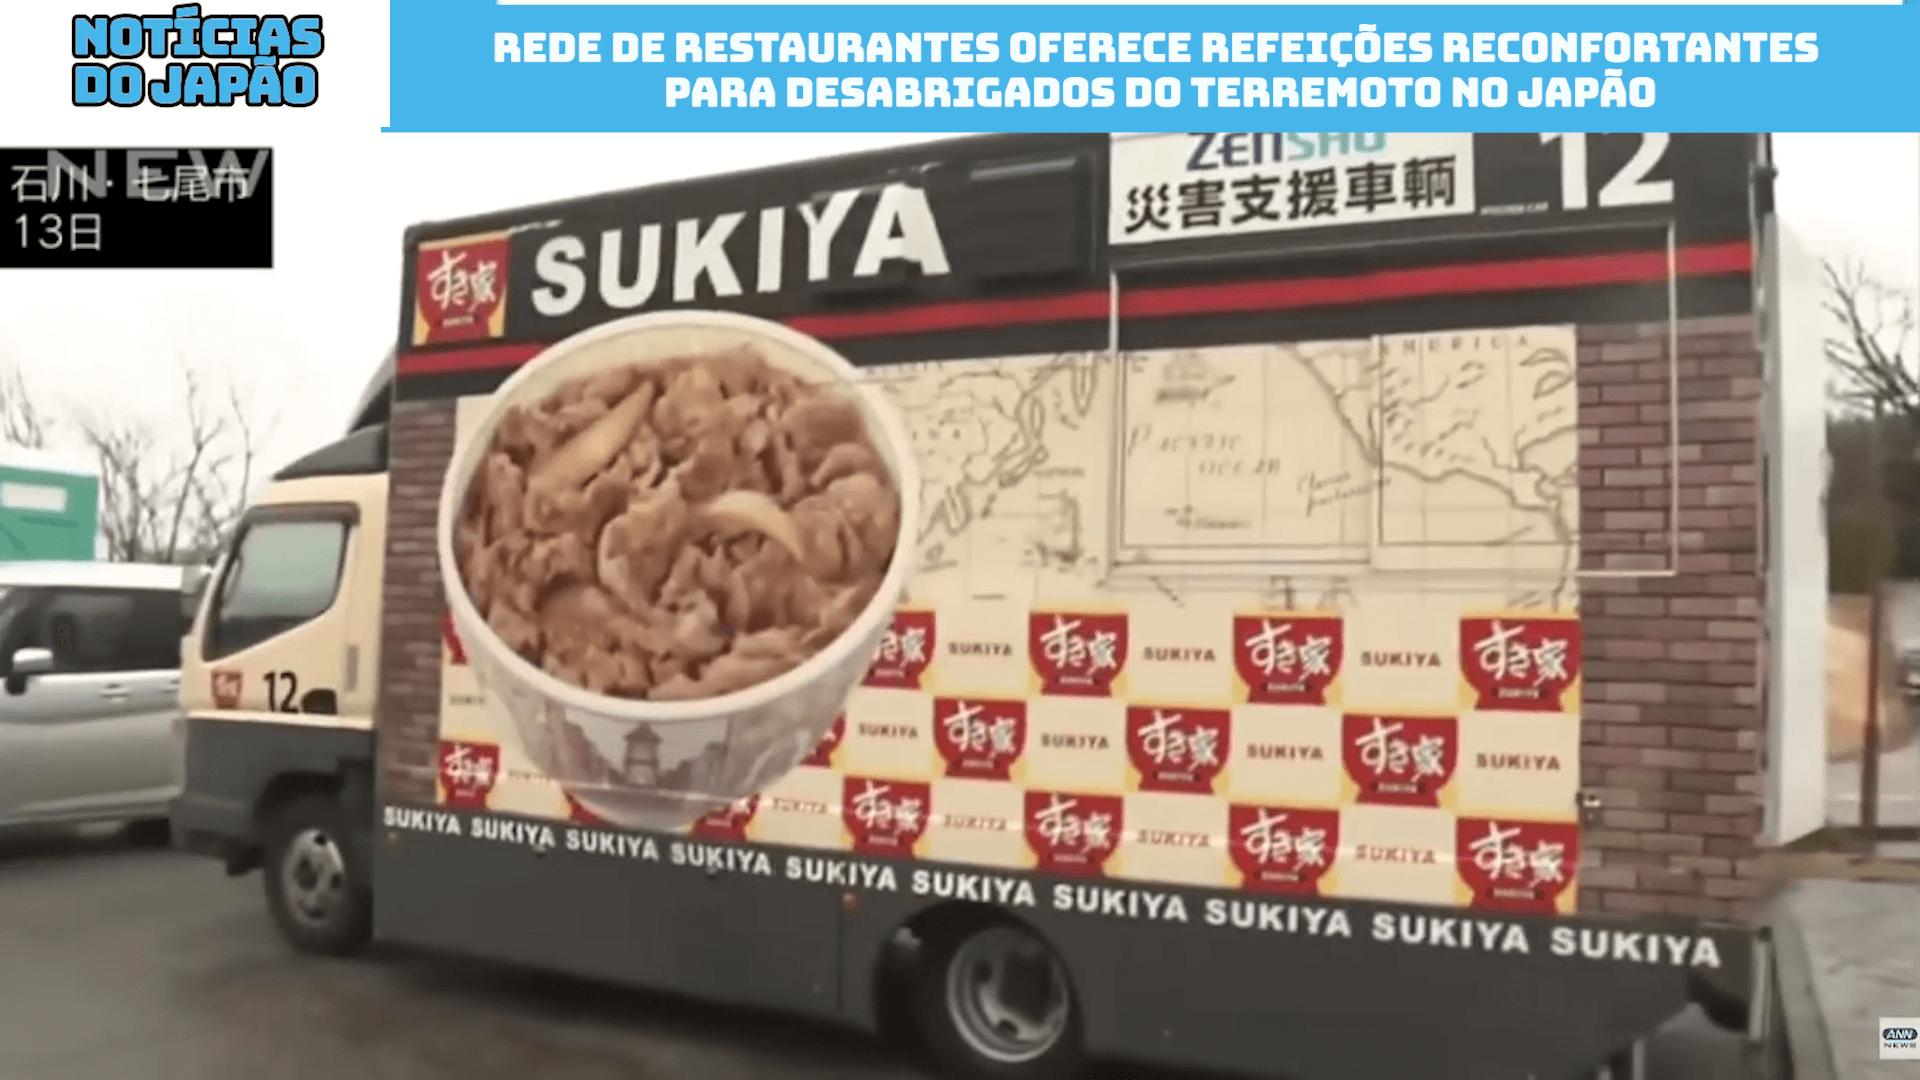 Rede de restaurantes oferece refeições reconfortantes para desabrigados do terremoto no Japão 